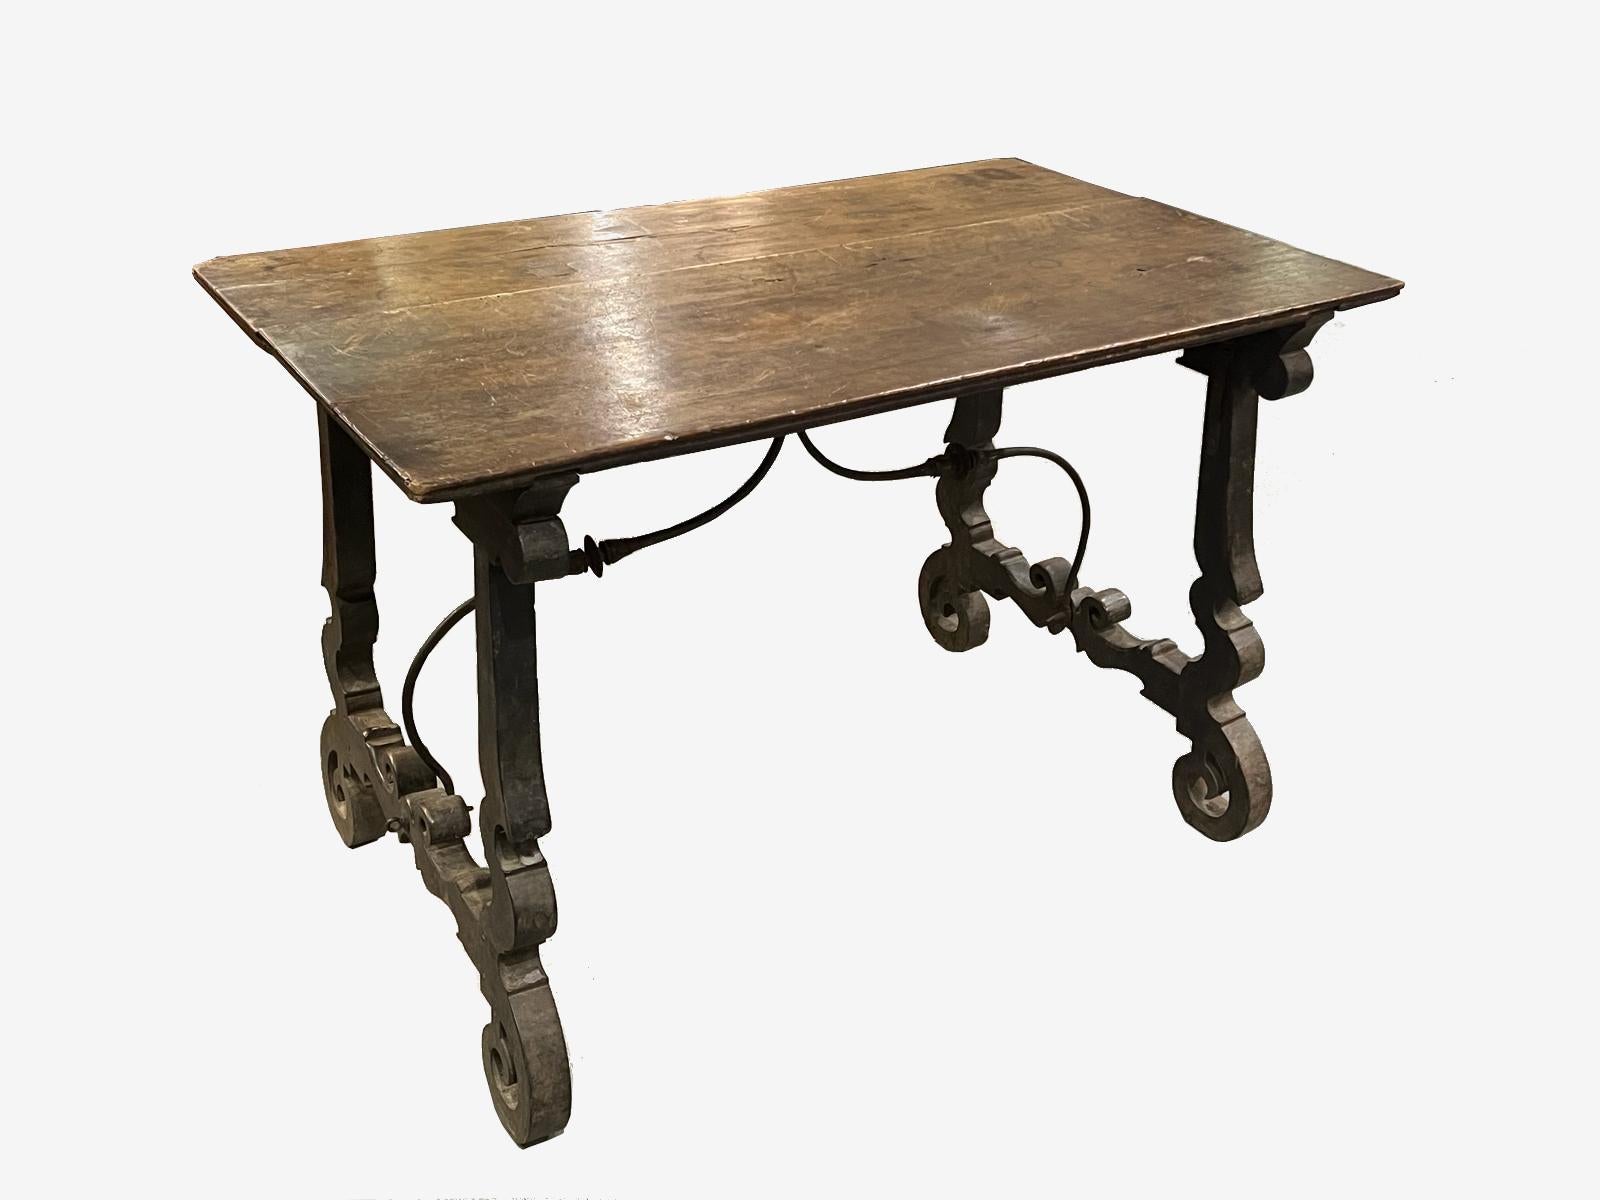 Echter spanischer Tisch aus der Zeit um 1600 mit klappbarem Gestell in erster Patina.

Originaler antiker spanischer Tisch
Spanischer Tisch aus dem späten 16. Jahrhundert mit erster Patina, in ausgezeichnetem Gesamtzustand und von hervorragender